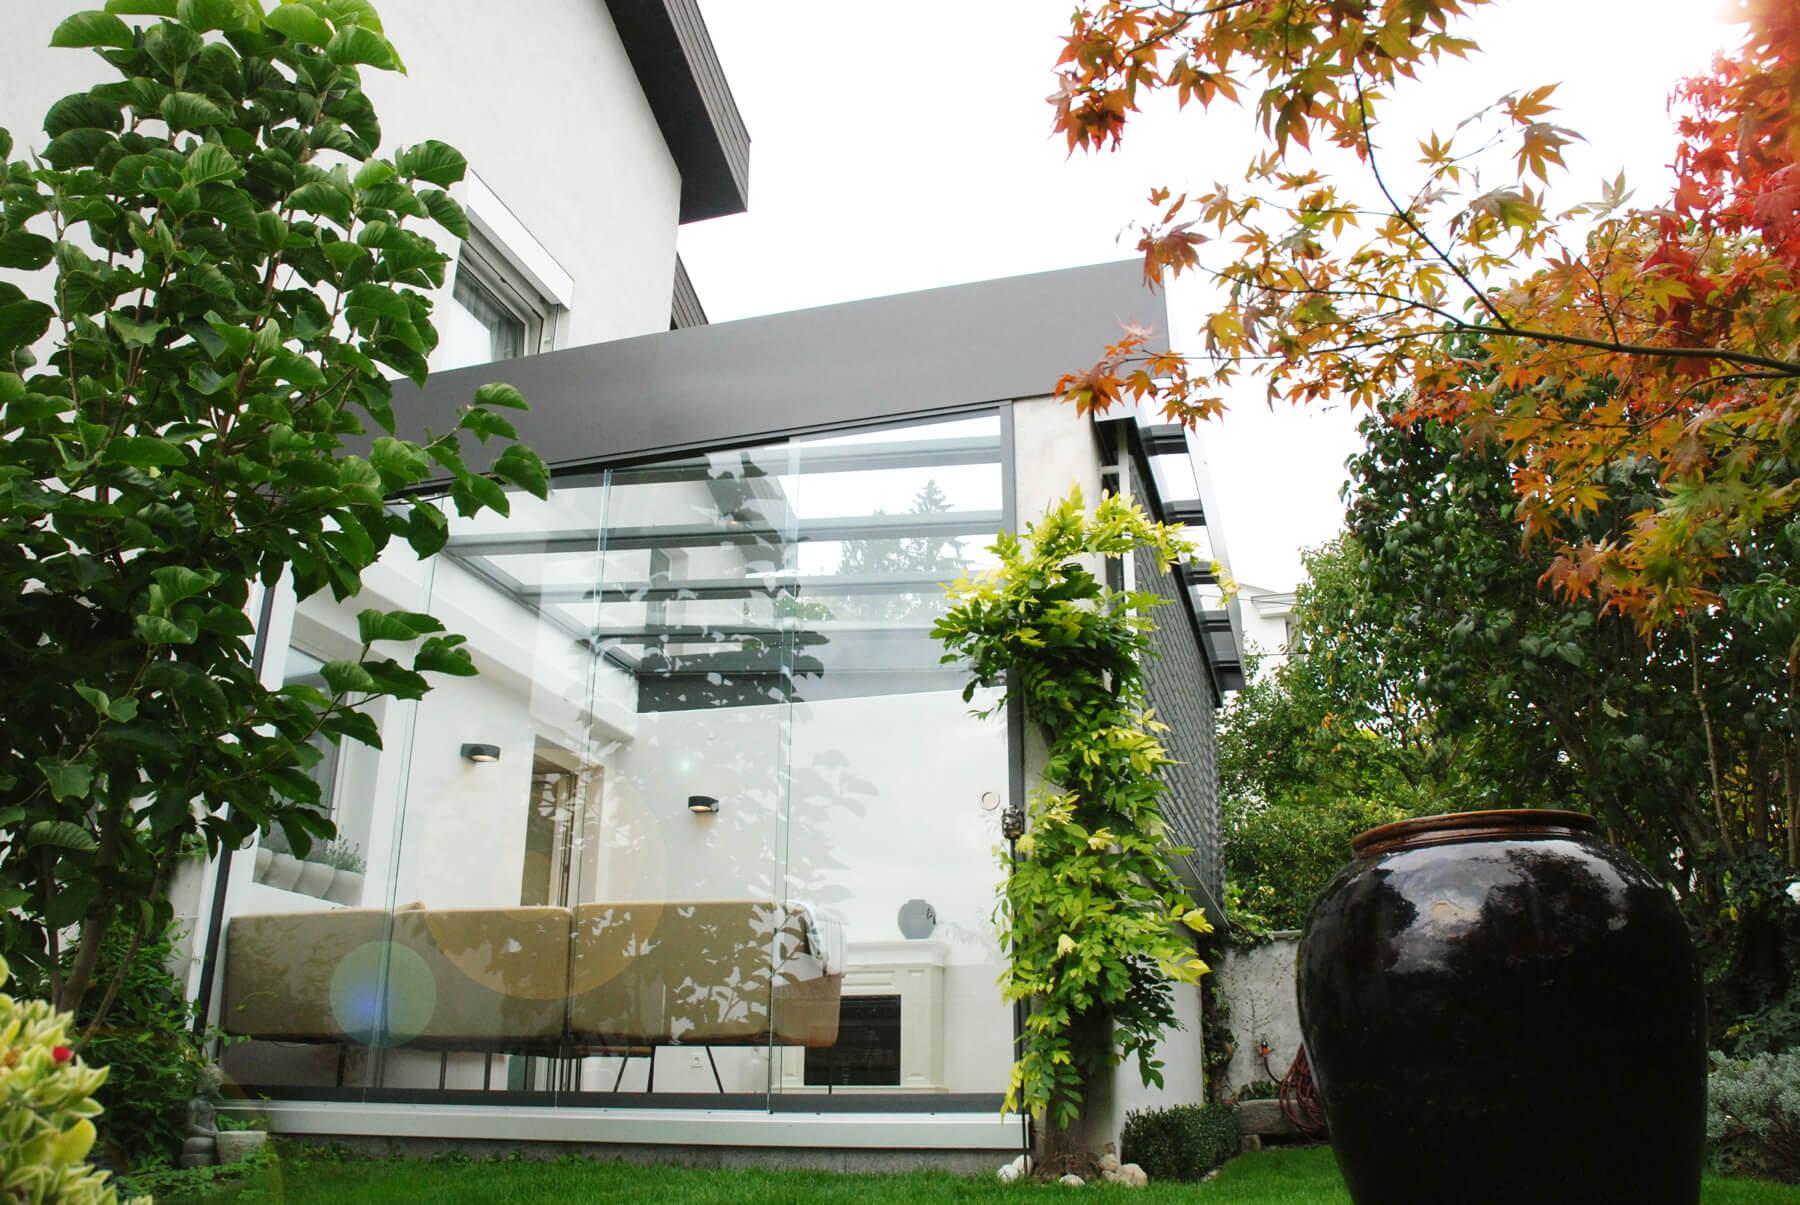 Moderner #Sommergarten mit Kamin und gemütlicher Wohnlandschaft!
#Glashaus 